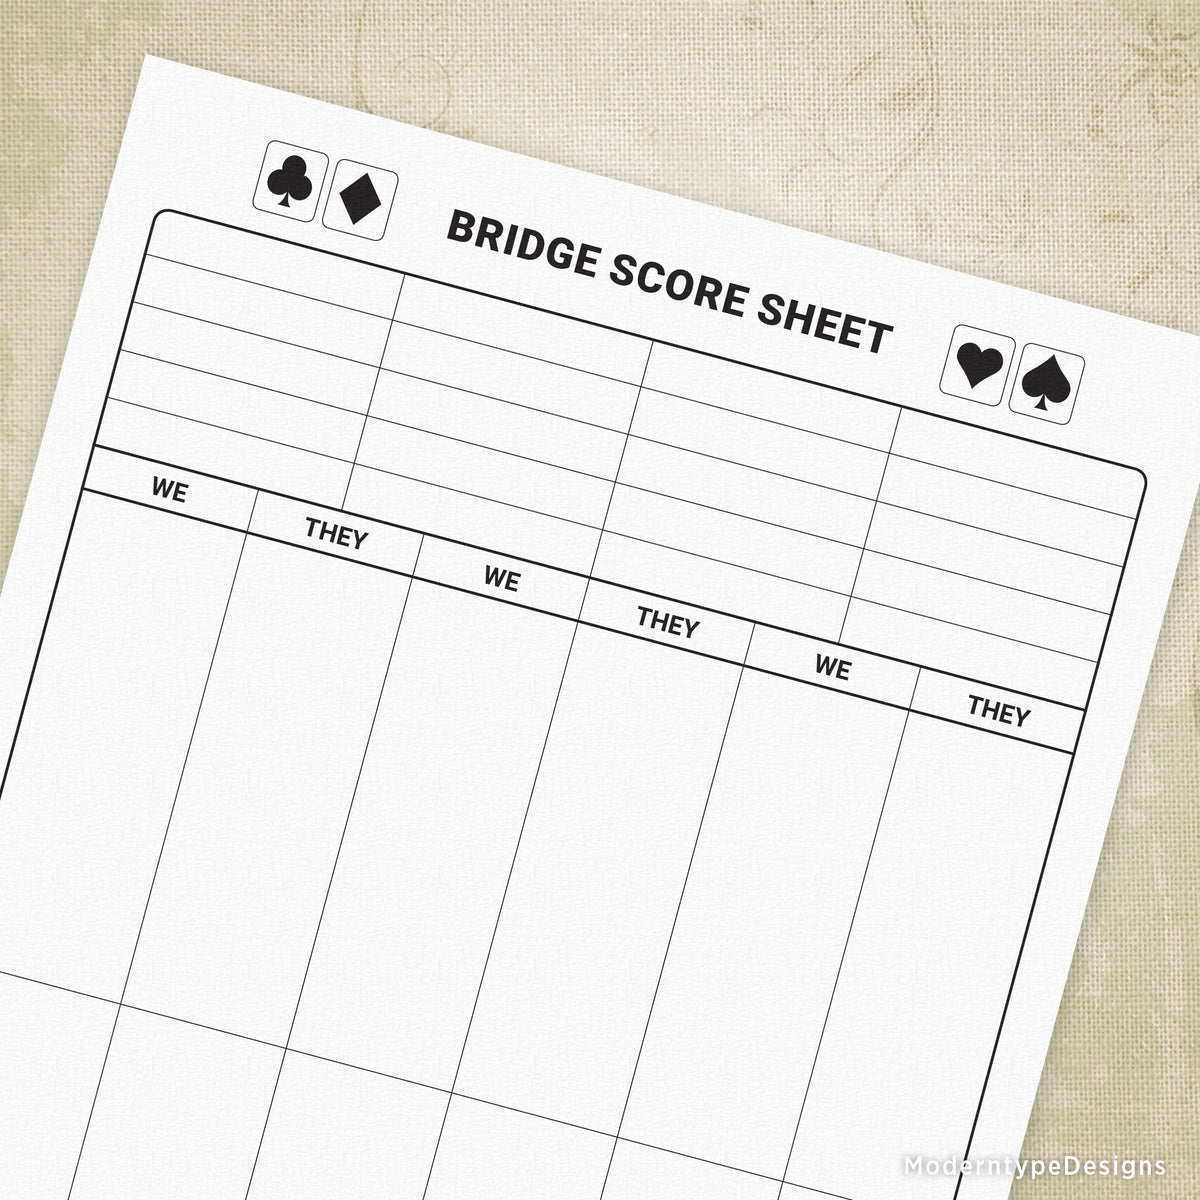 bridge-scoring-sheet-printable-moderntype-designs